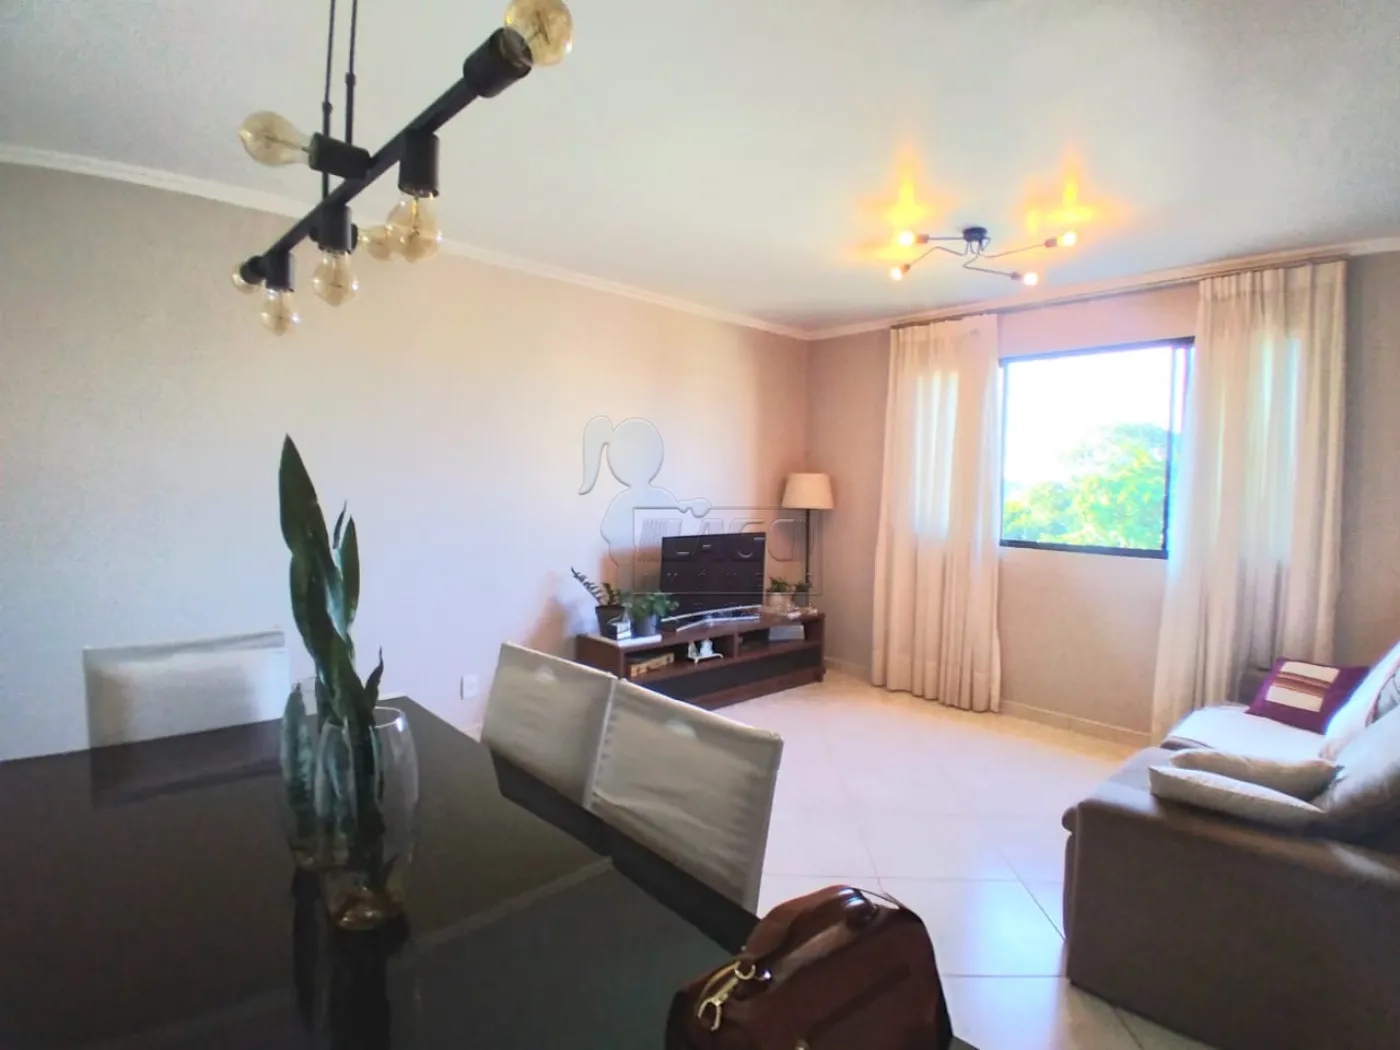 Comprar Apartamento / Padrão em Ribeirão Preto R$ 278.000,00 - Foto 2